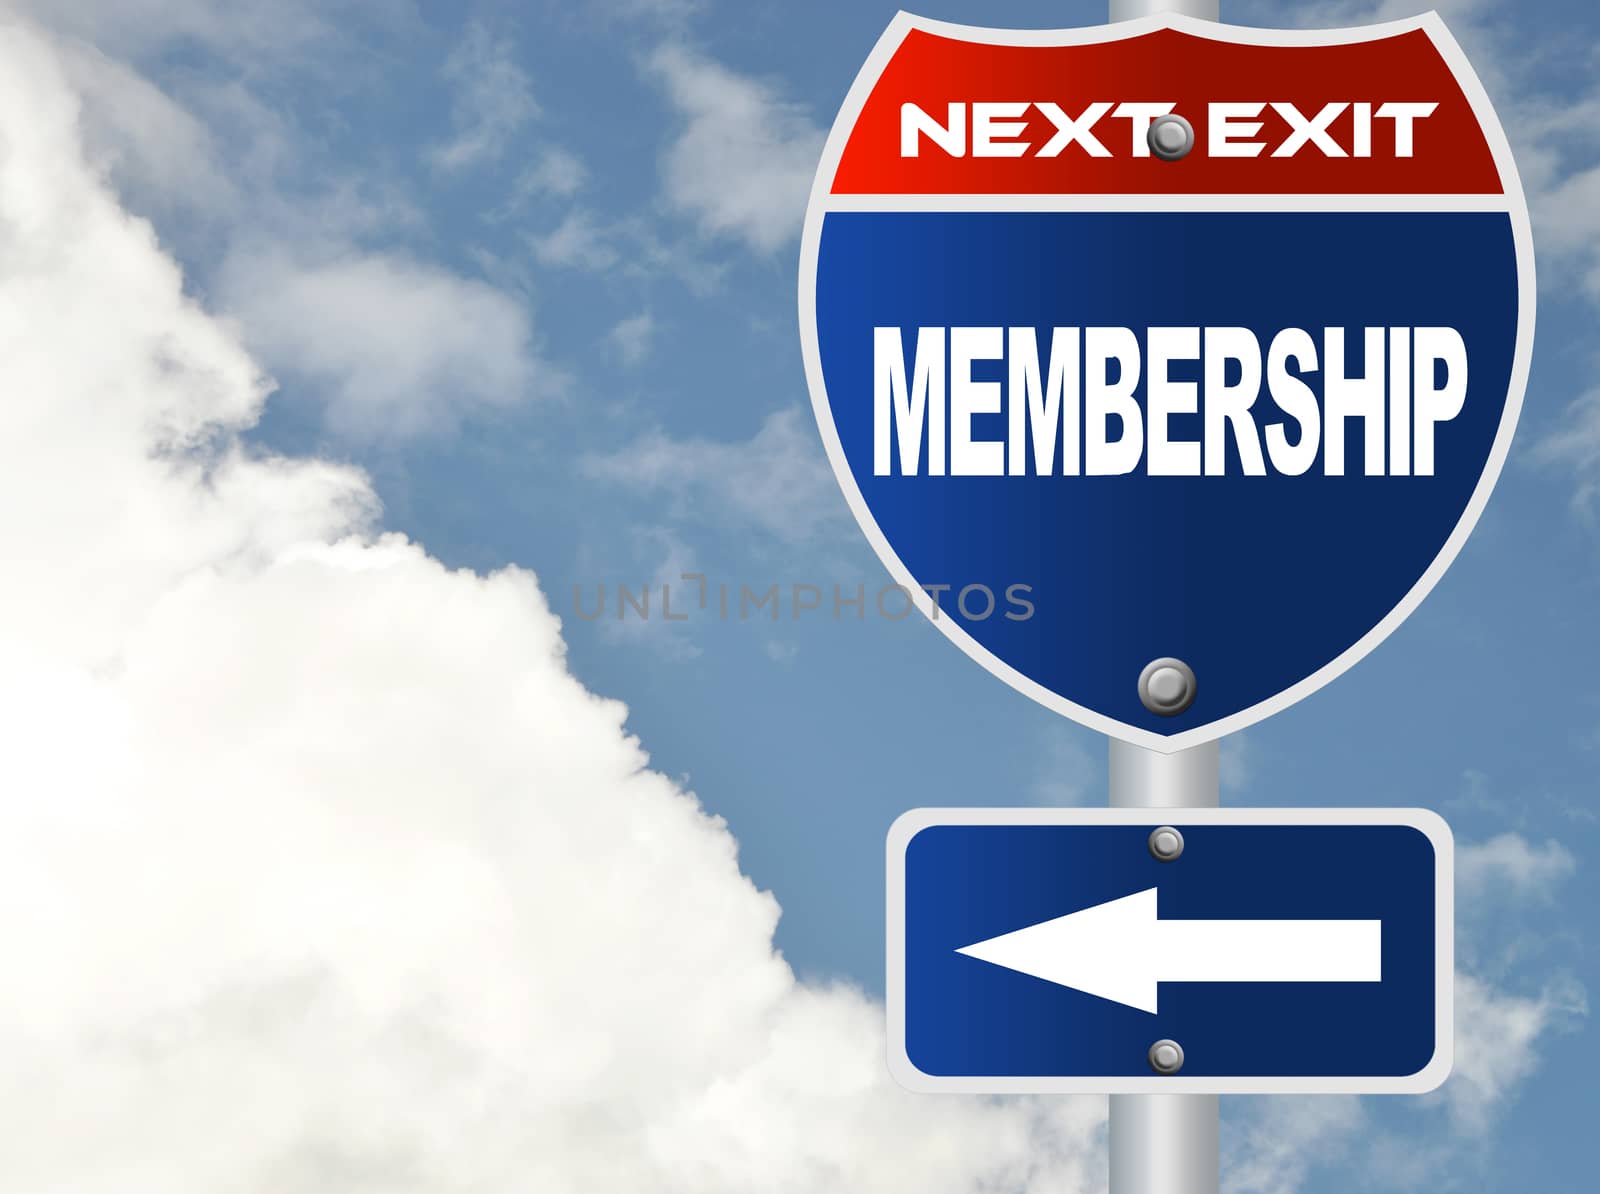 Membership road sign